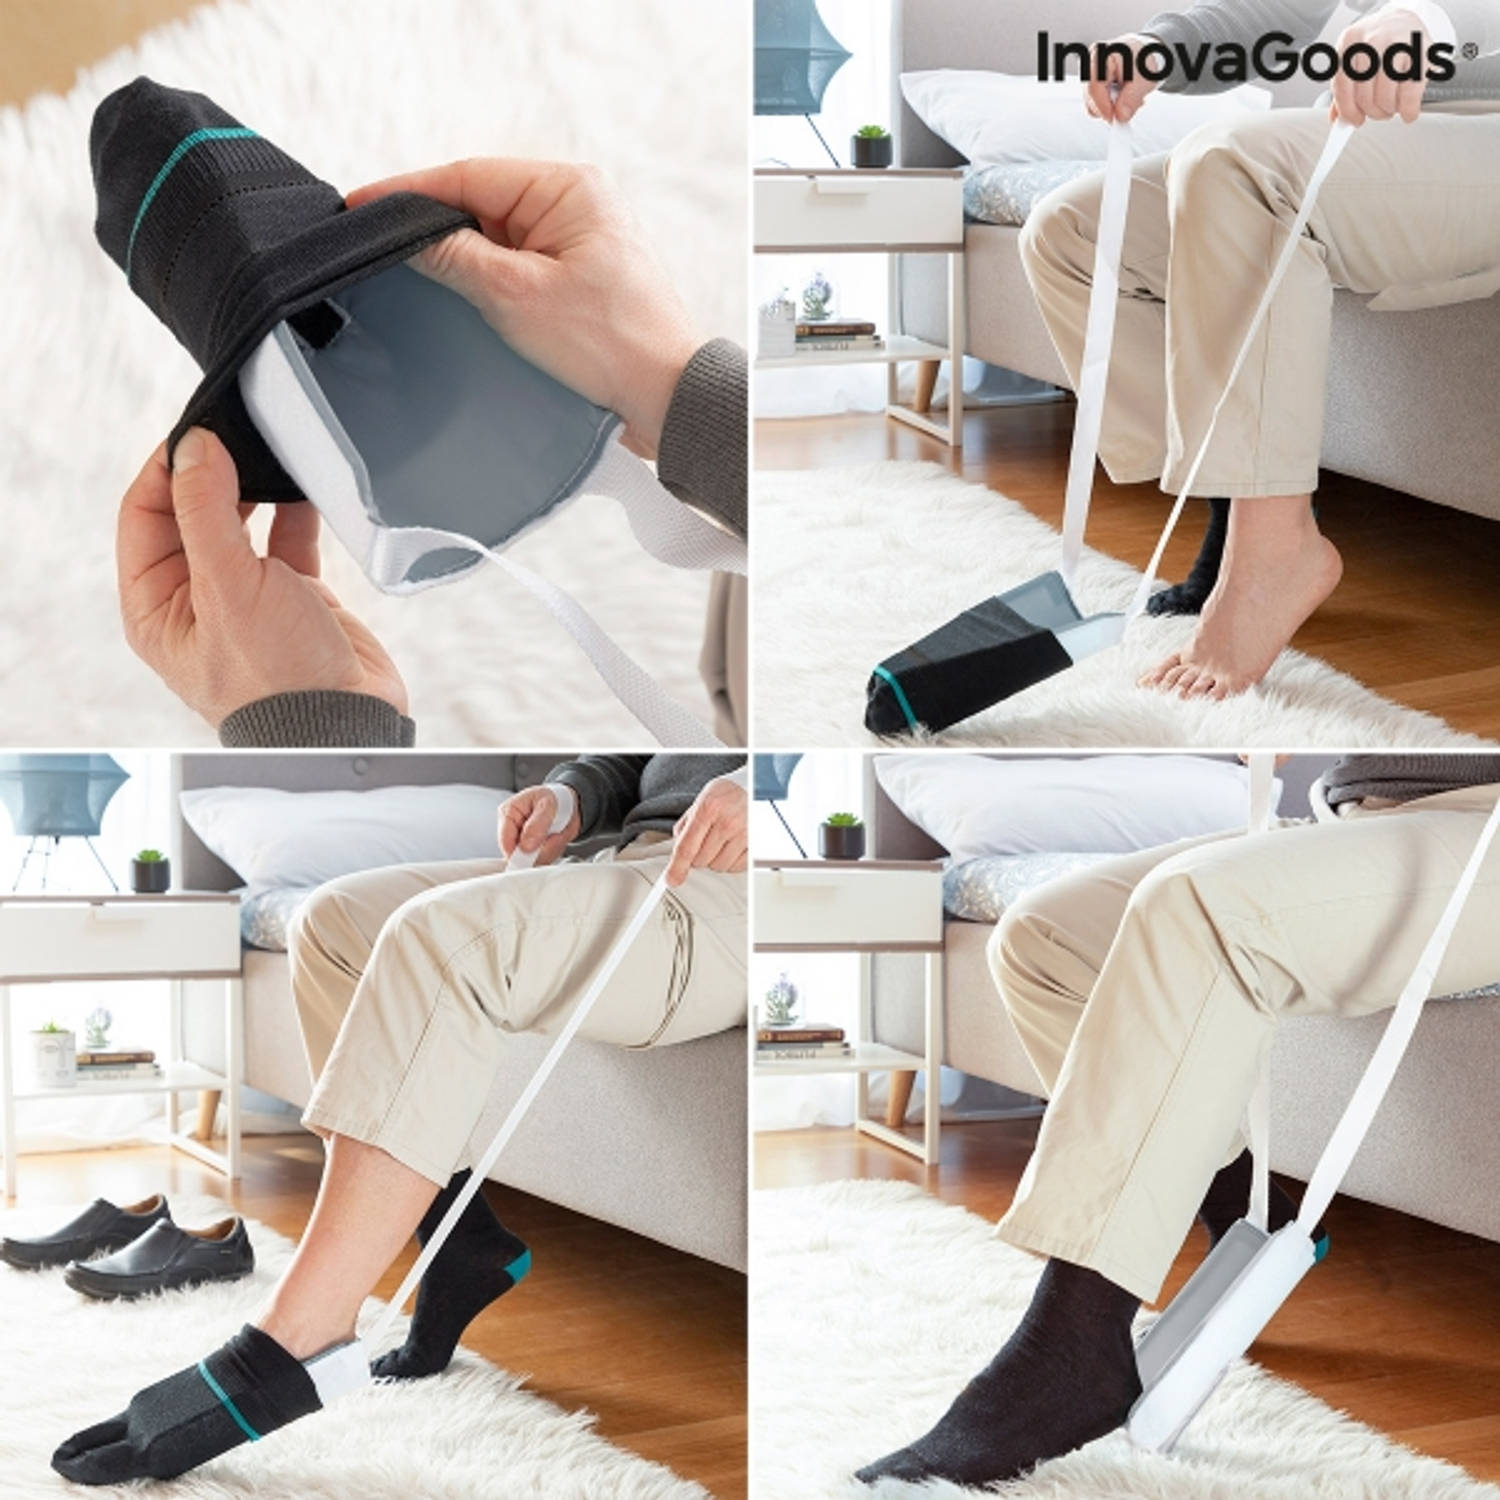 Vermelden opslaan Beperkt Sokaantrekker Sok En Kousen Aantrekhulp gemakkelijk sokken aantrekken Hulp  Bij Sokken Aantrekken | Blokker